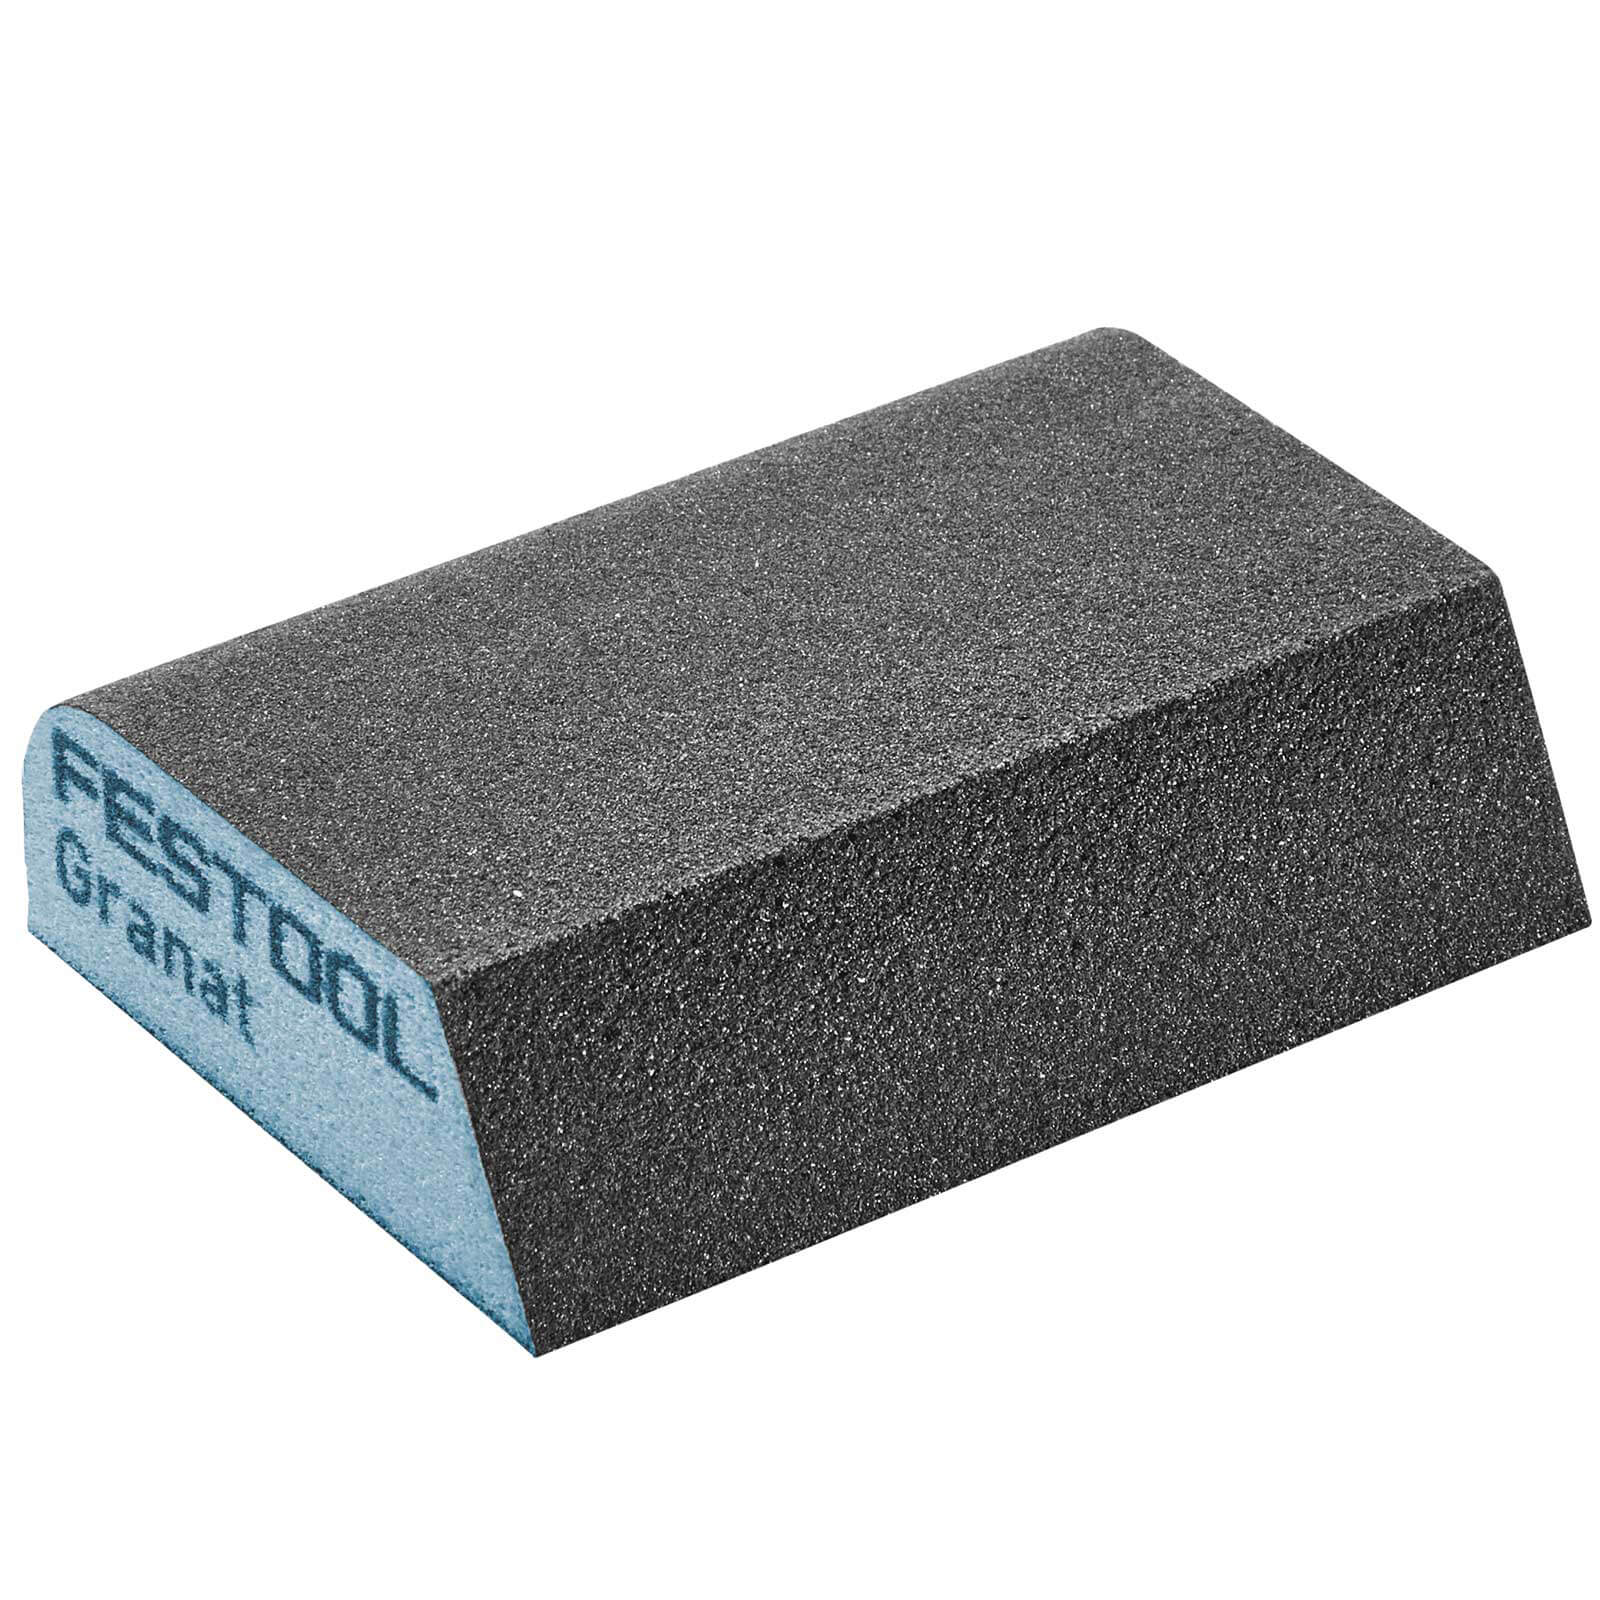 Photo of Festool Abrasive Hand Sanding Combi Sponge 120g Pack Of 6